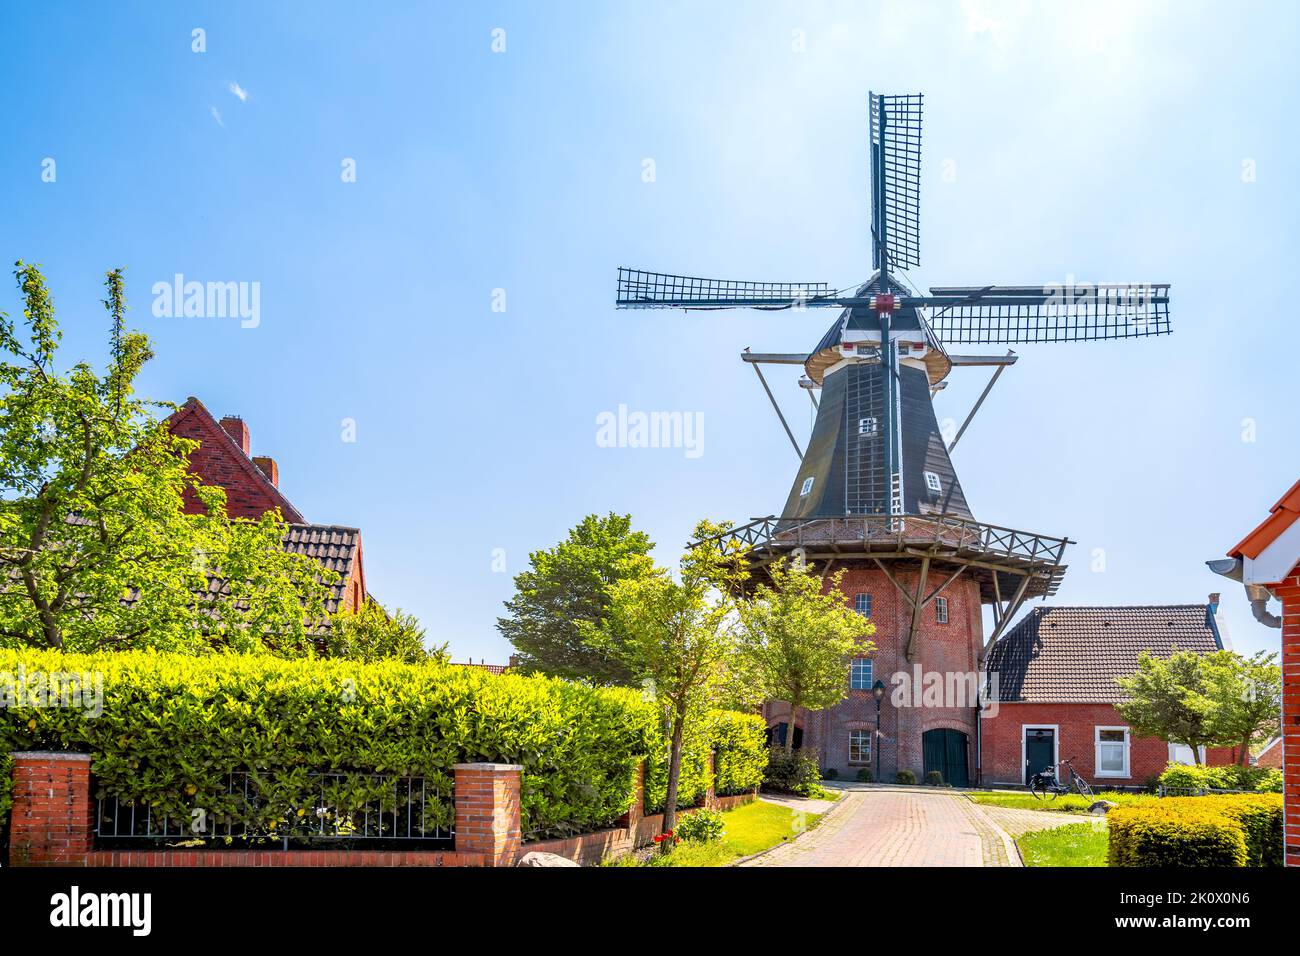 Mill in Rysum, Krummhoern, East Friesland, North Sea, Germany Stock Photo